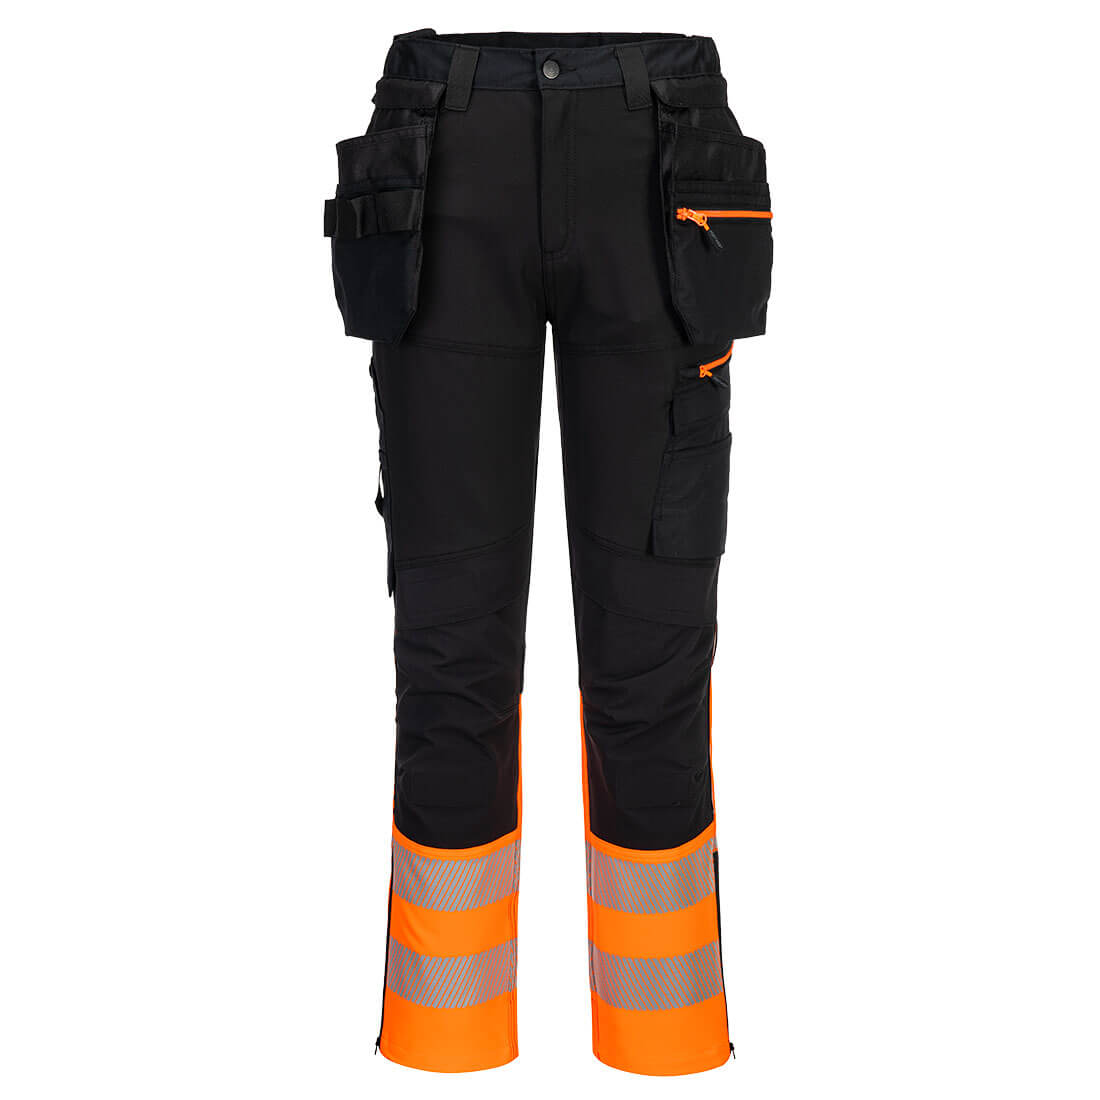 DX4 Warnschutz Handwerker Bundhose Klasse 1 DX457 in Orange / Schwarz, Größe 41 von Portwest